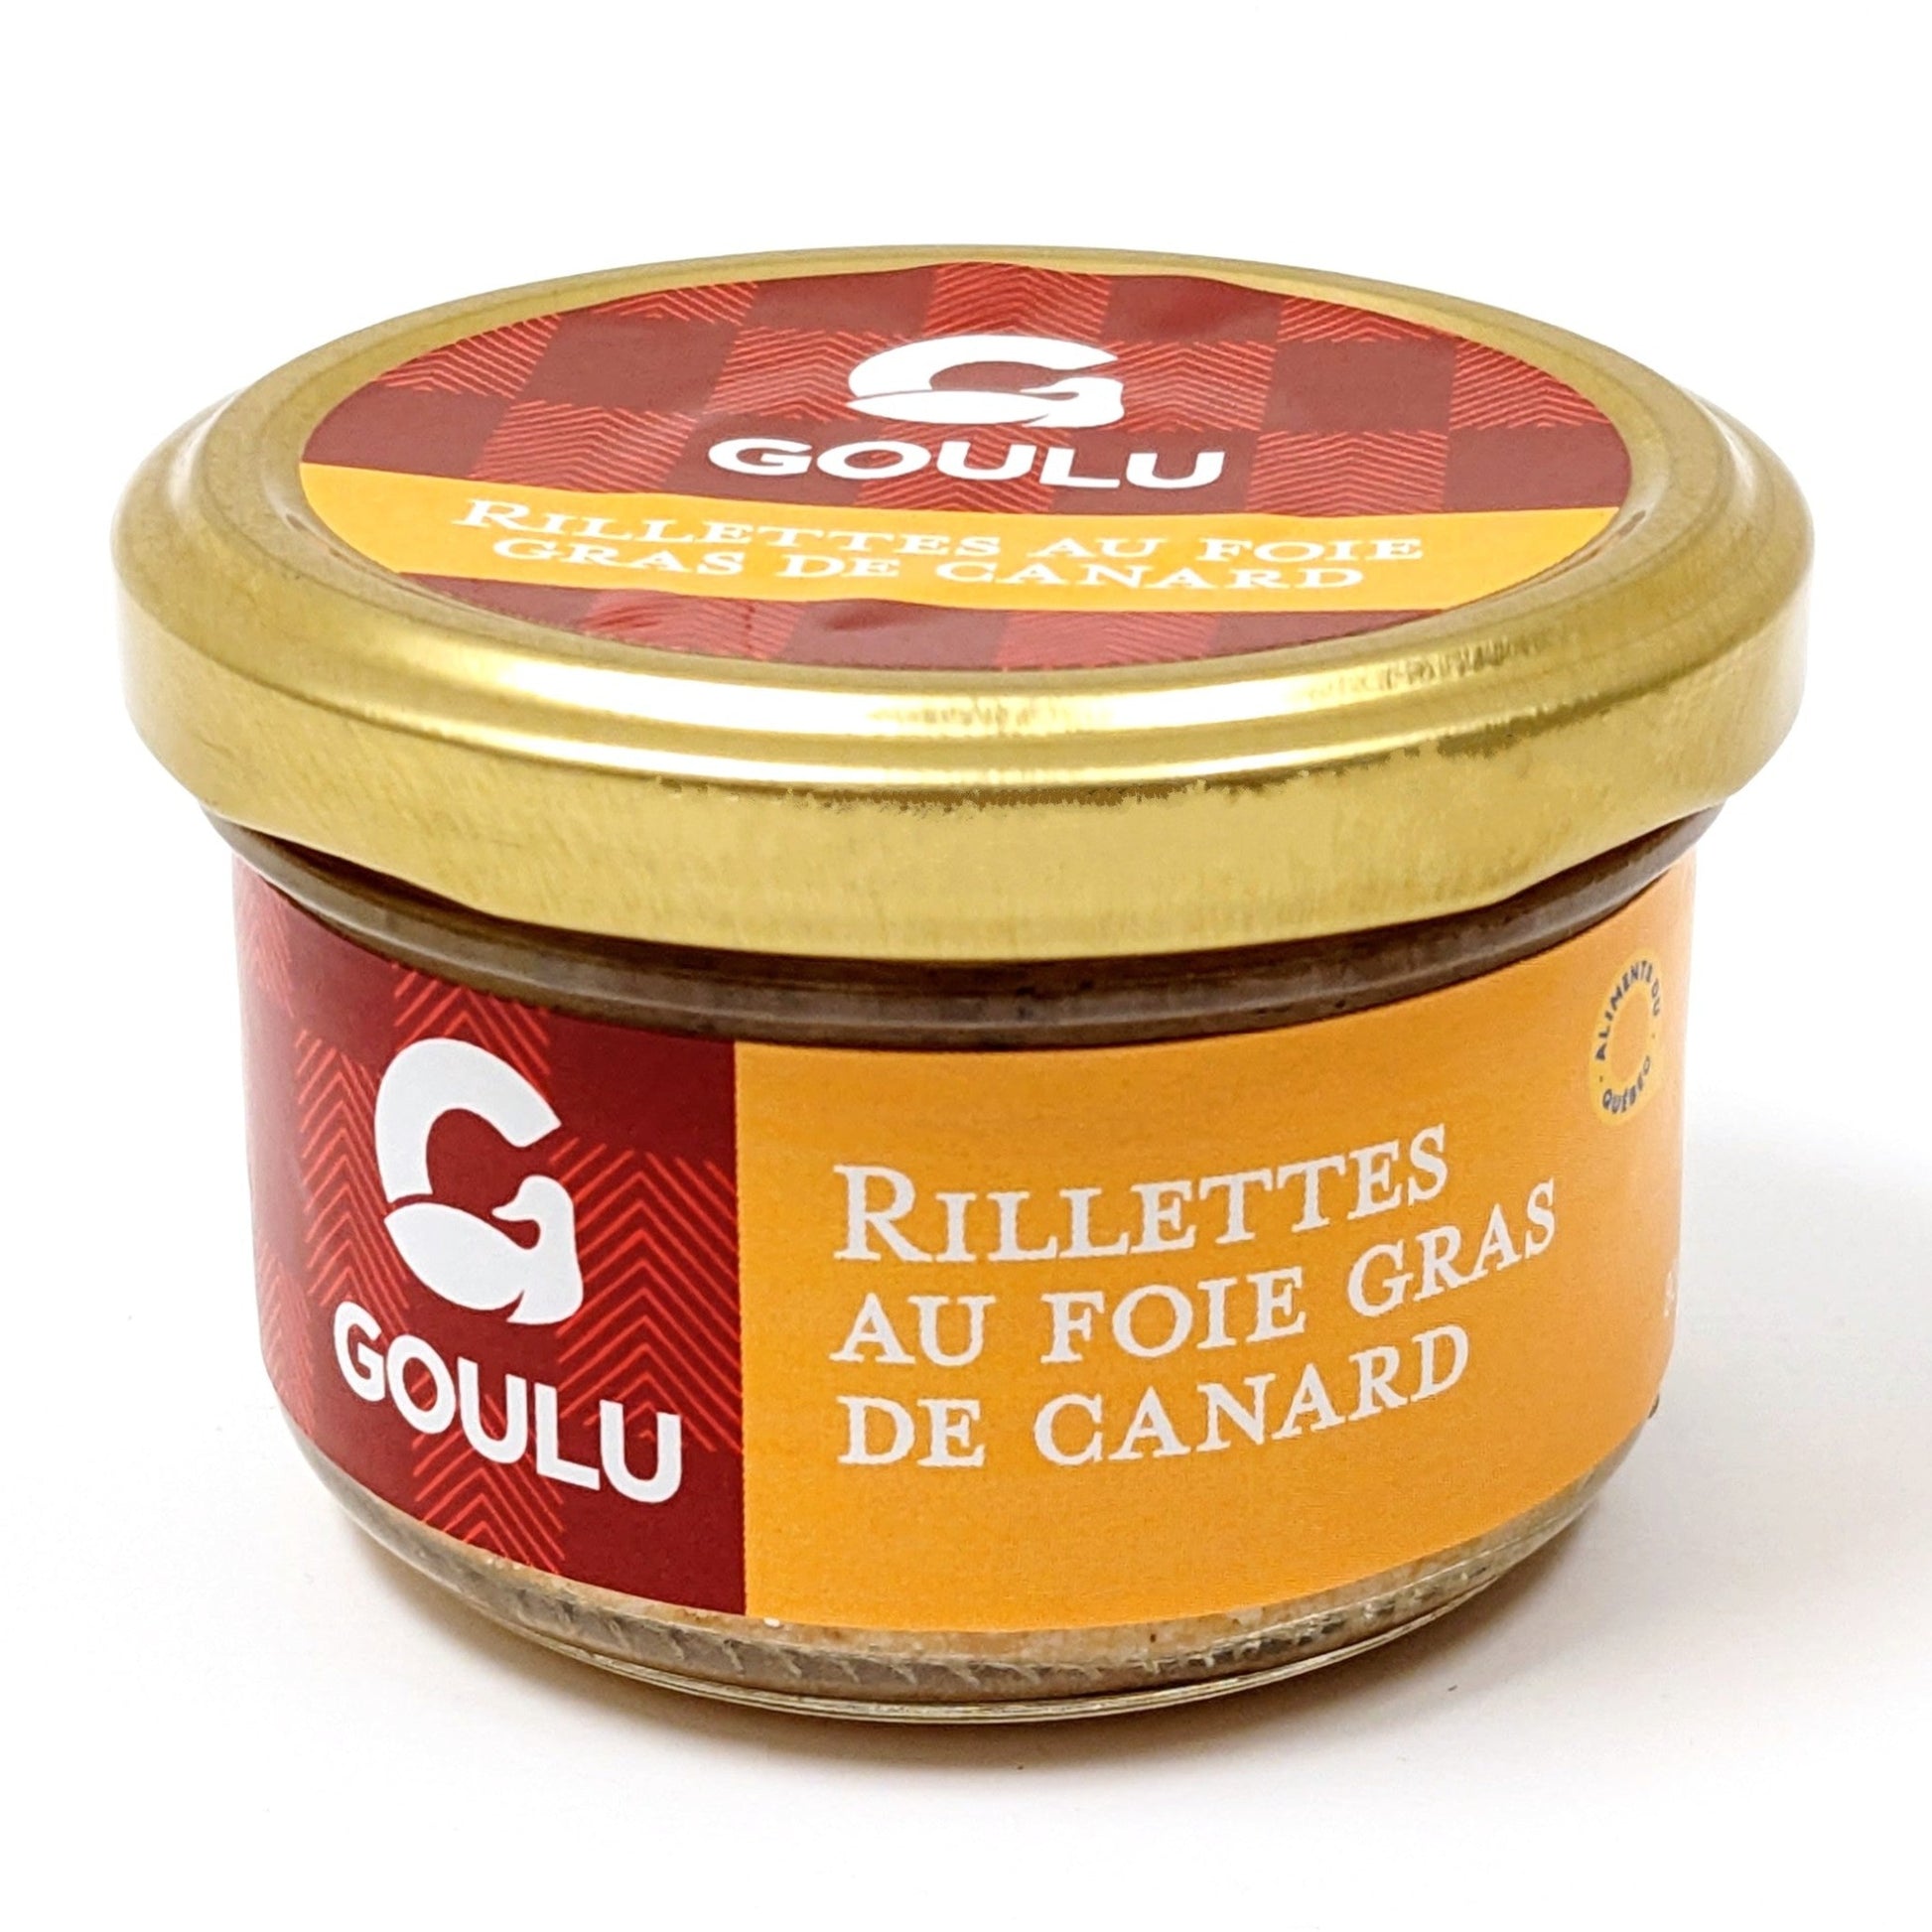 Rillettes au foie gras de canard - Canard Goulu